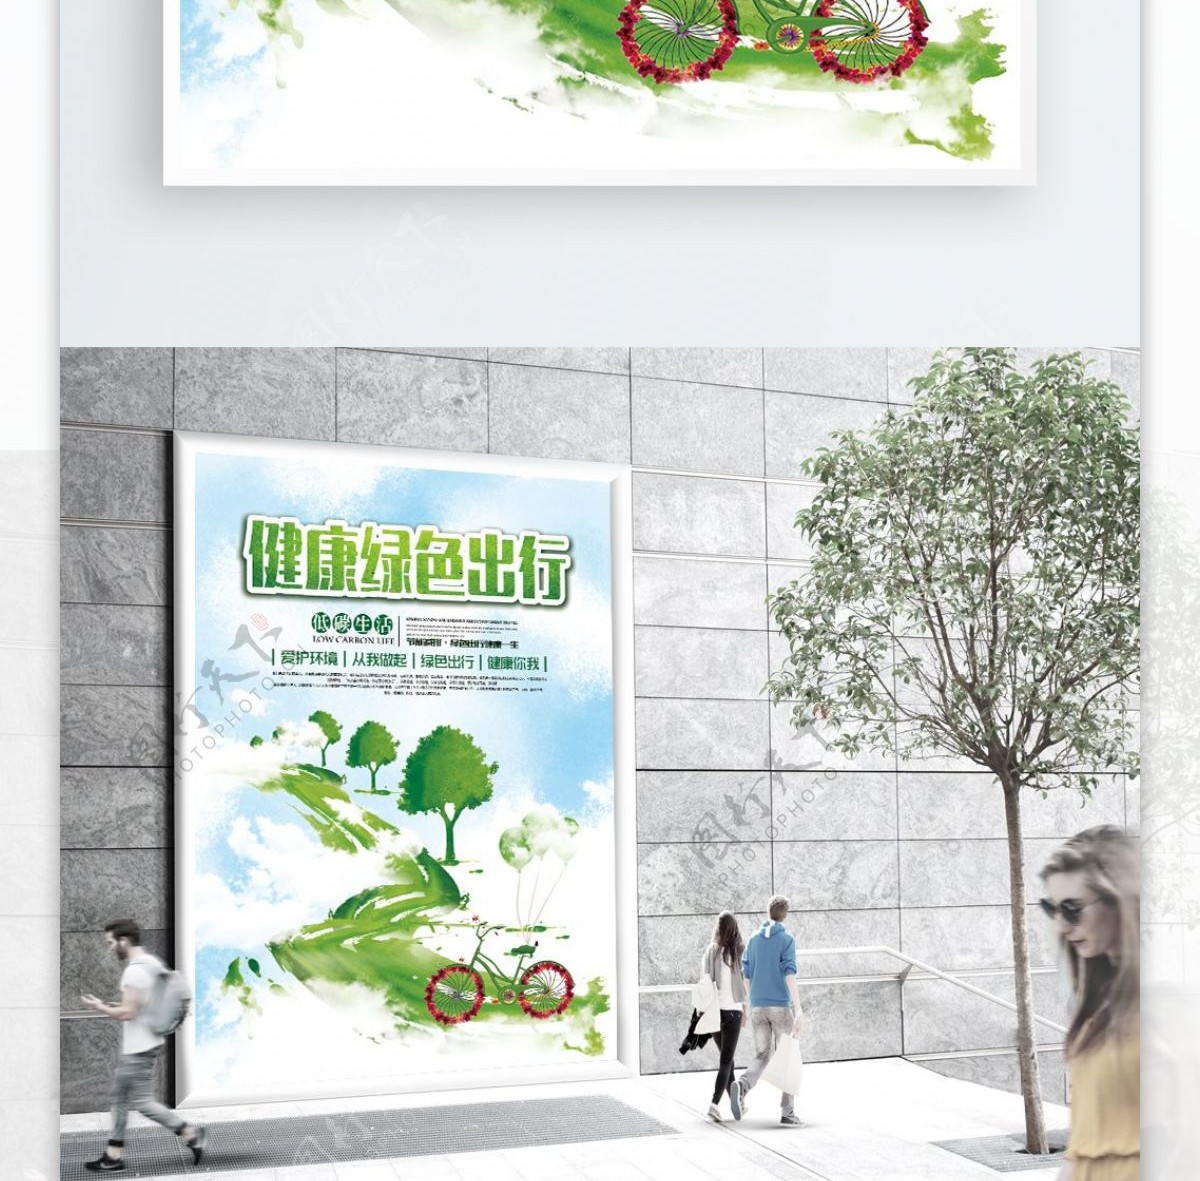 绿色健康出行海报CDR模板